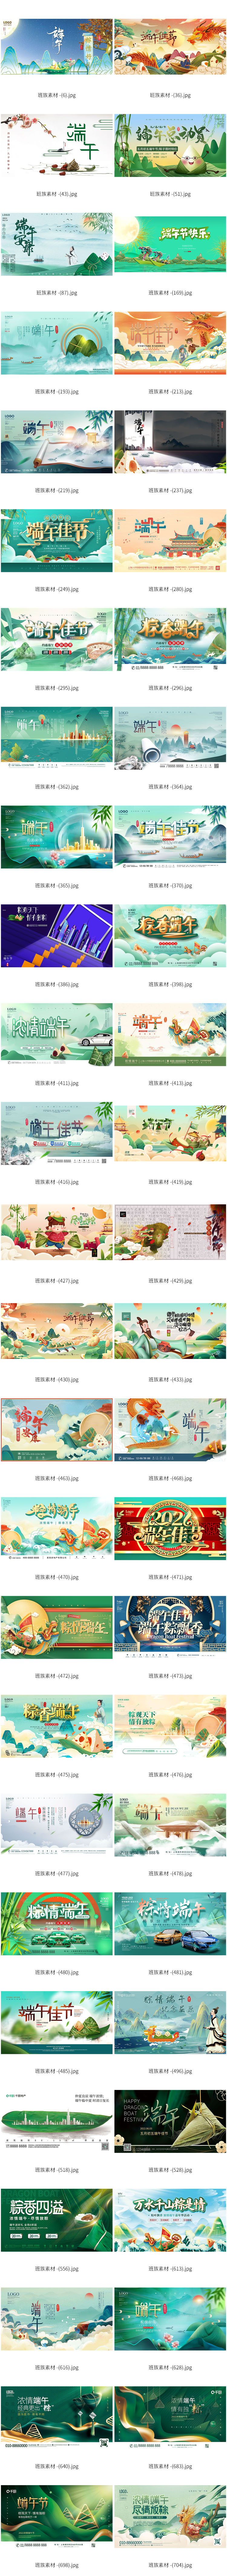 897套端午节传统节日赛龙舟包粽子活动宣传海报展板模板PSD素材